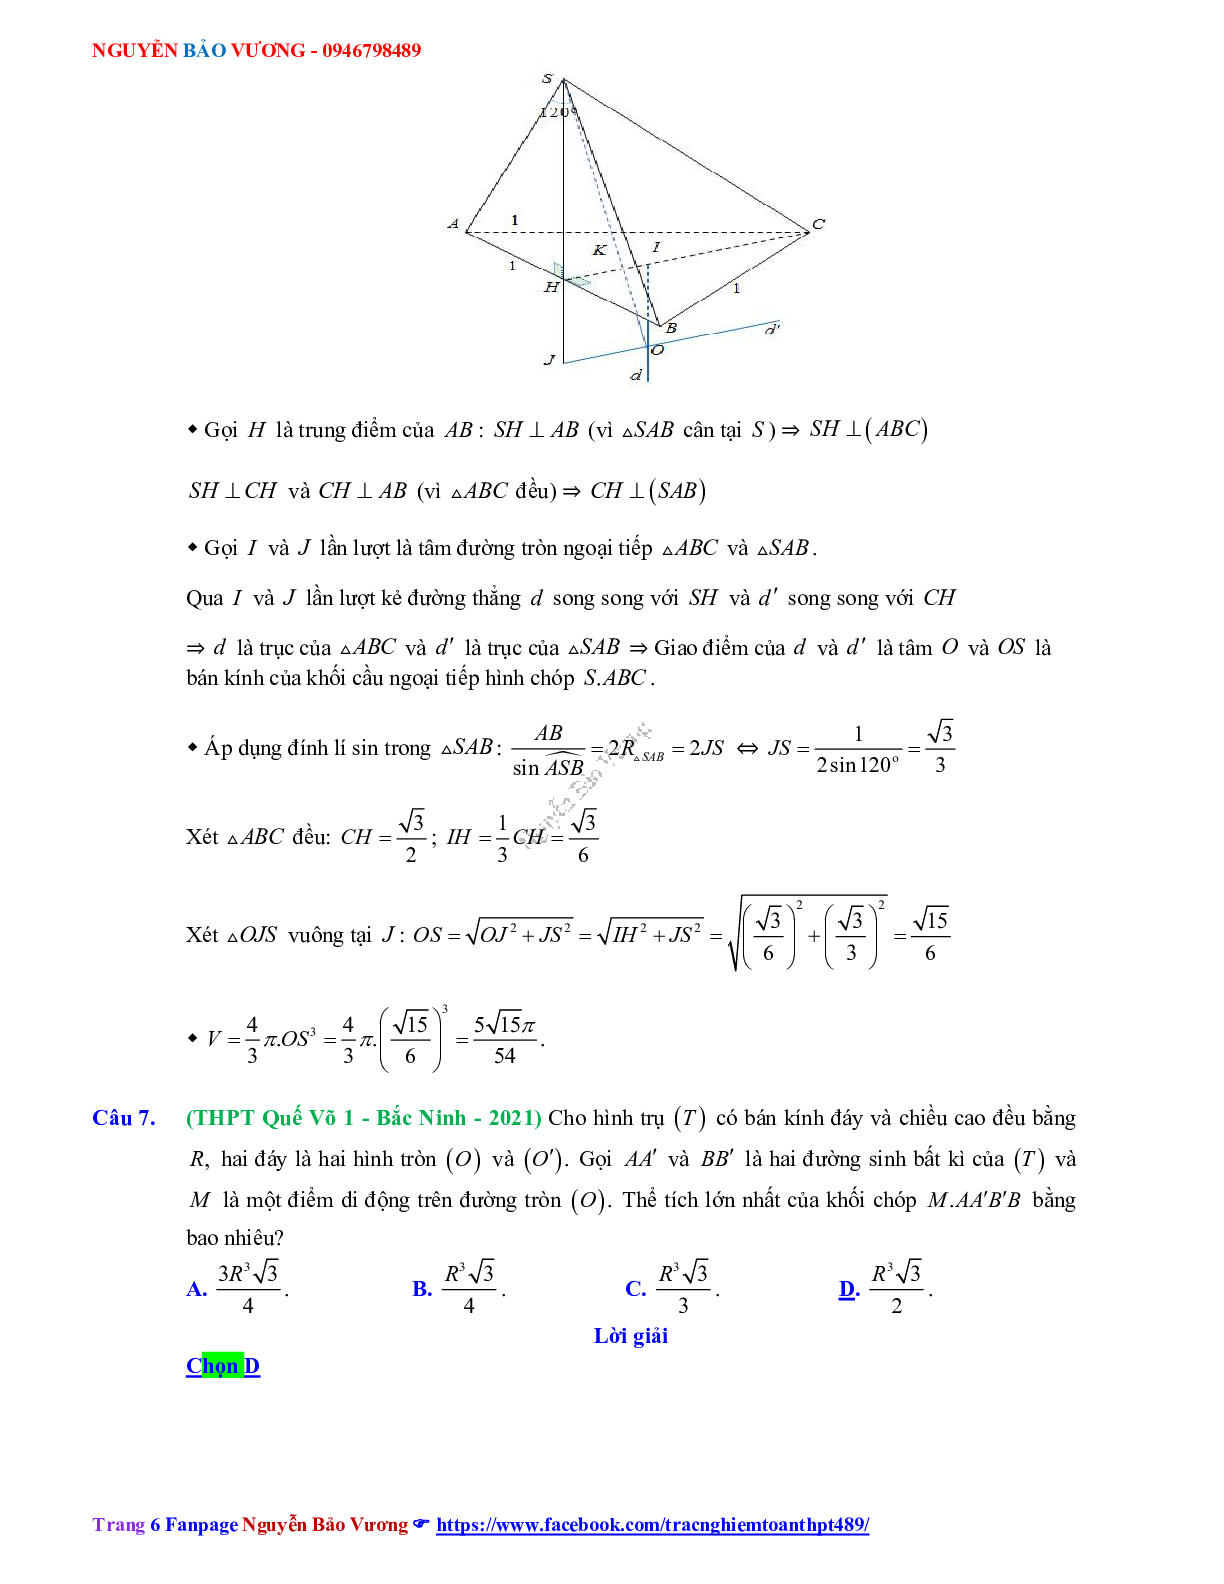 Trắc nghiệm Ôn thi THPT QG Toán 12: Đáp án khối tròn xoay mức độ vận dụng cao (trang 6)